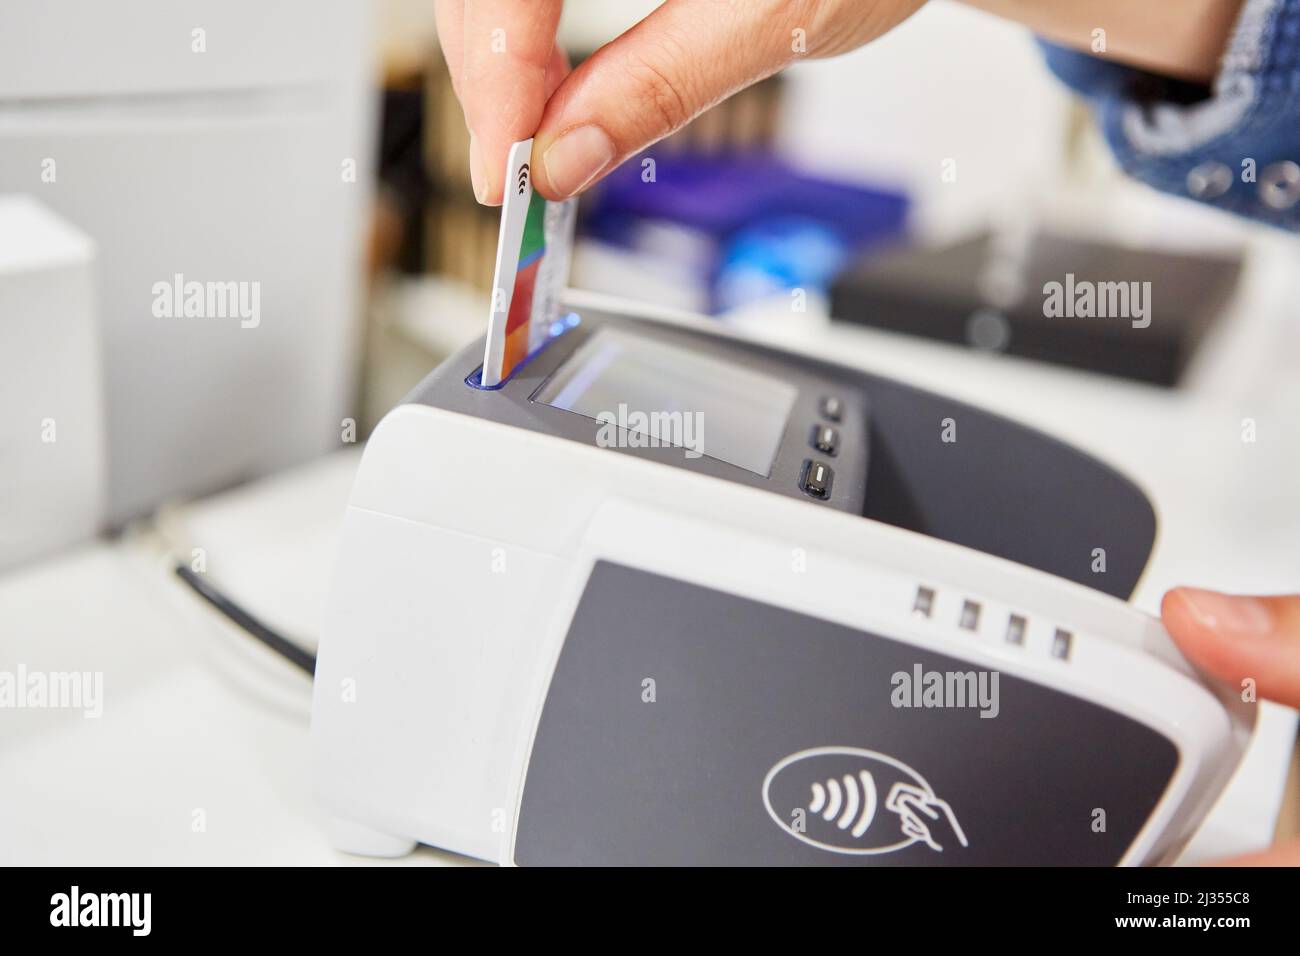 La main insère la carte client ou la carte de crédit dans un terminal de carte pour un paiement sans espèces Banque D'Images